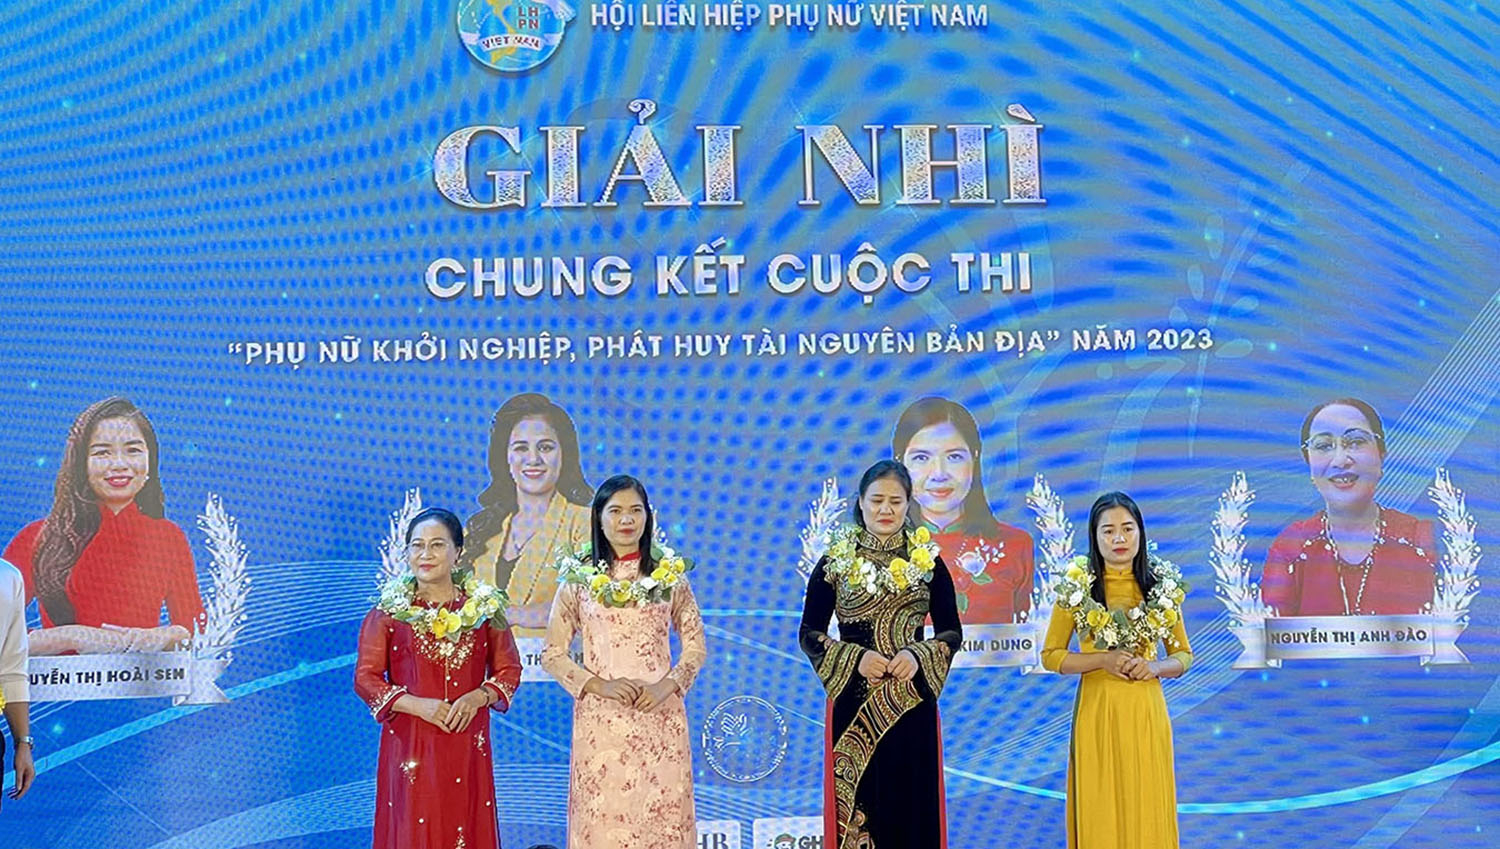 Chị Nguyễn Thị Hoài Sen (ngoài cùng bên phải) tại lễ trao giải chung kết toàn quốc cuộc thi 'Phụ nữ khởi nghiệp, phát huy tài nguyên bản địa' năm 2023. Ảnh: BTC.